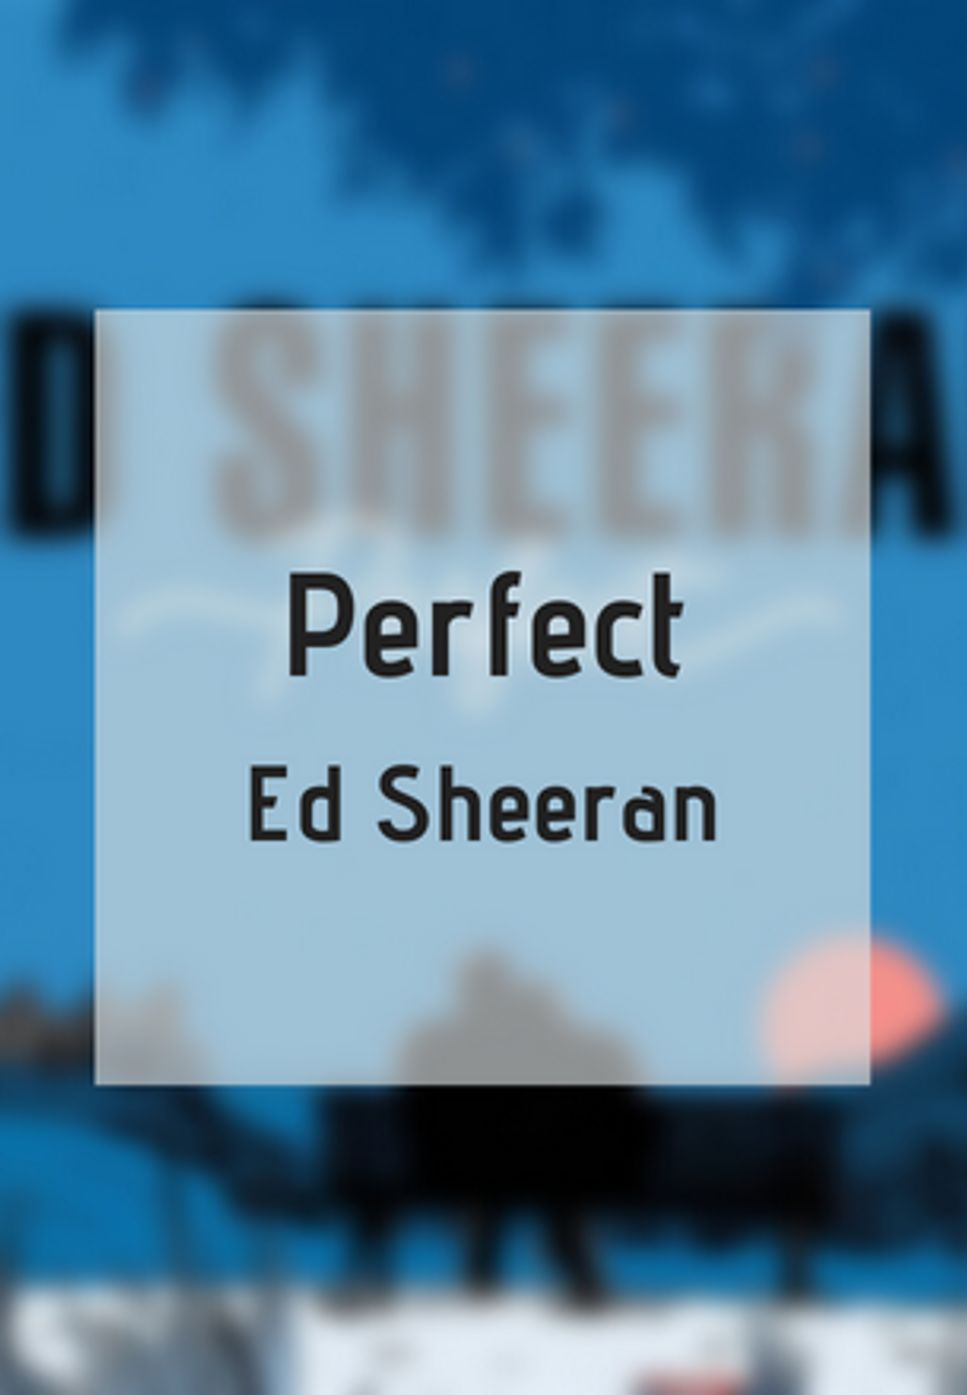 Ed Sheeran - Perfect by GuestinPiano